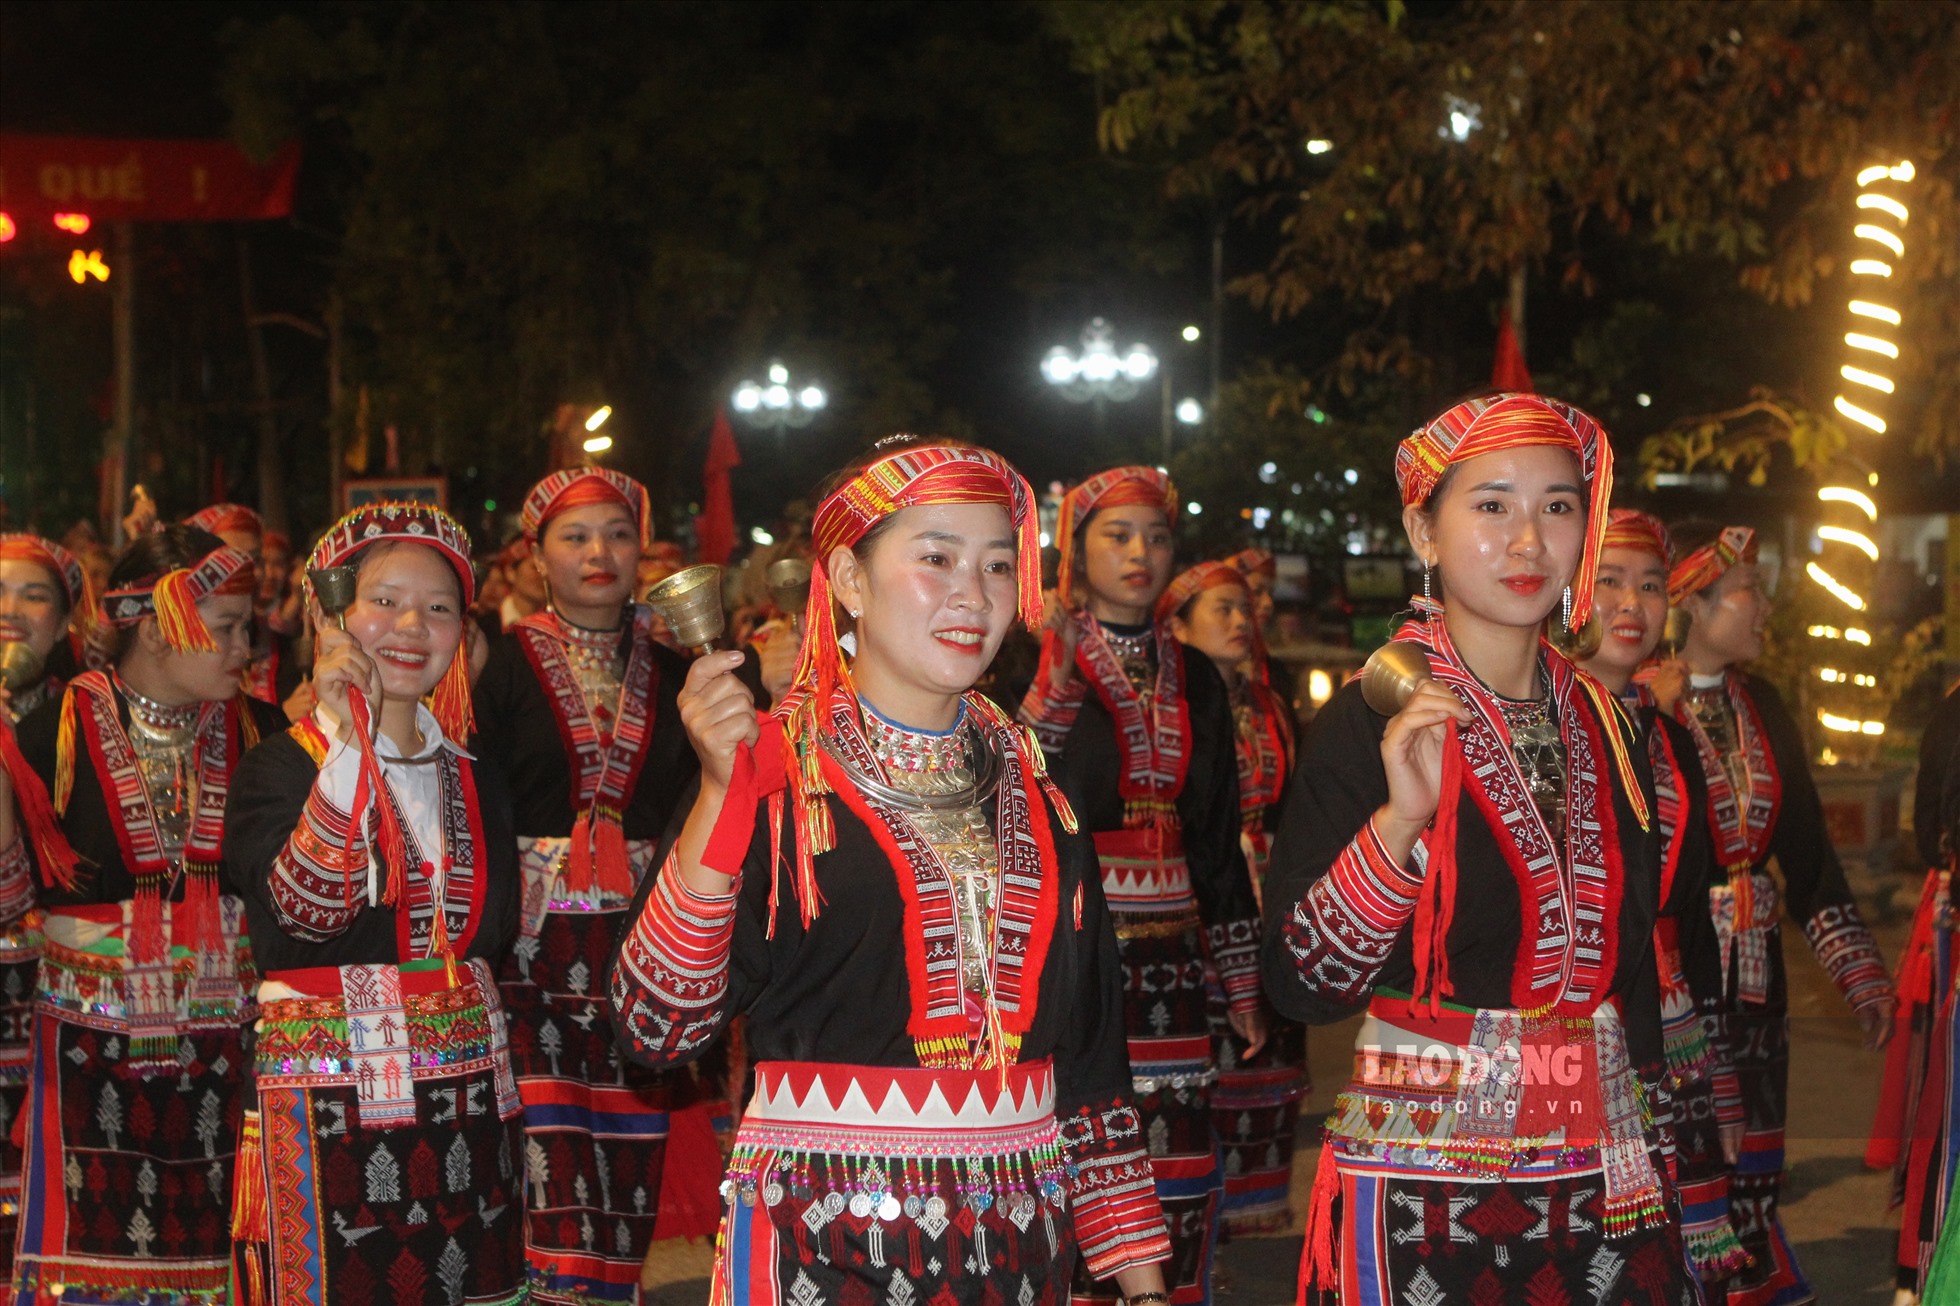 Trước giờ khai mạc Lễ hội Quế Văn Yên lần thứ 4 năm 2022, tối 14/10, huyện Văn Yên tổ chức hoạt động diễu diễn cùng “Người Dao xuống phố” với sự tham gia của 555 nghệ nhân, diễn viên quần chúng các tộc người Dao và các dân tộc khác. Đây là lần đầu tiên Văn Yên tổ chức hoạt động diễu diễn đường phố.